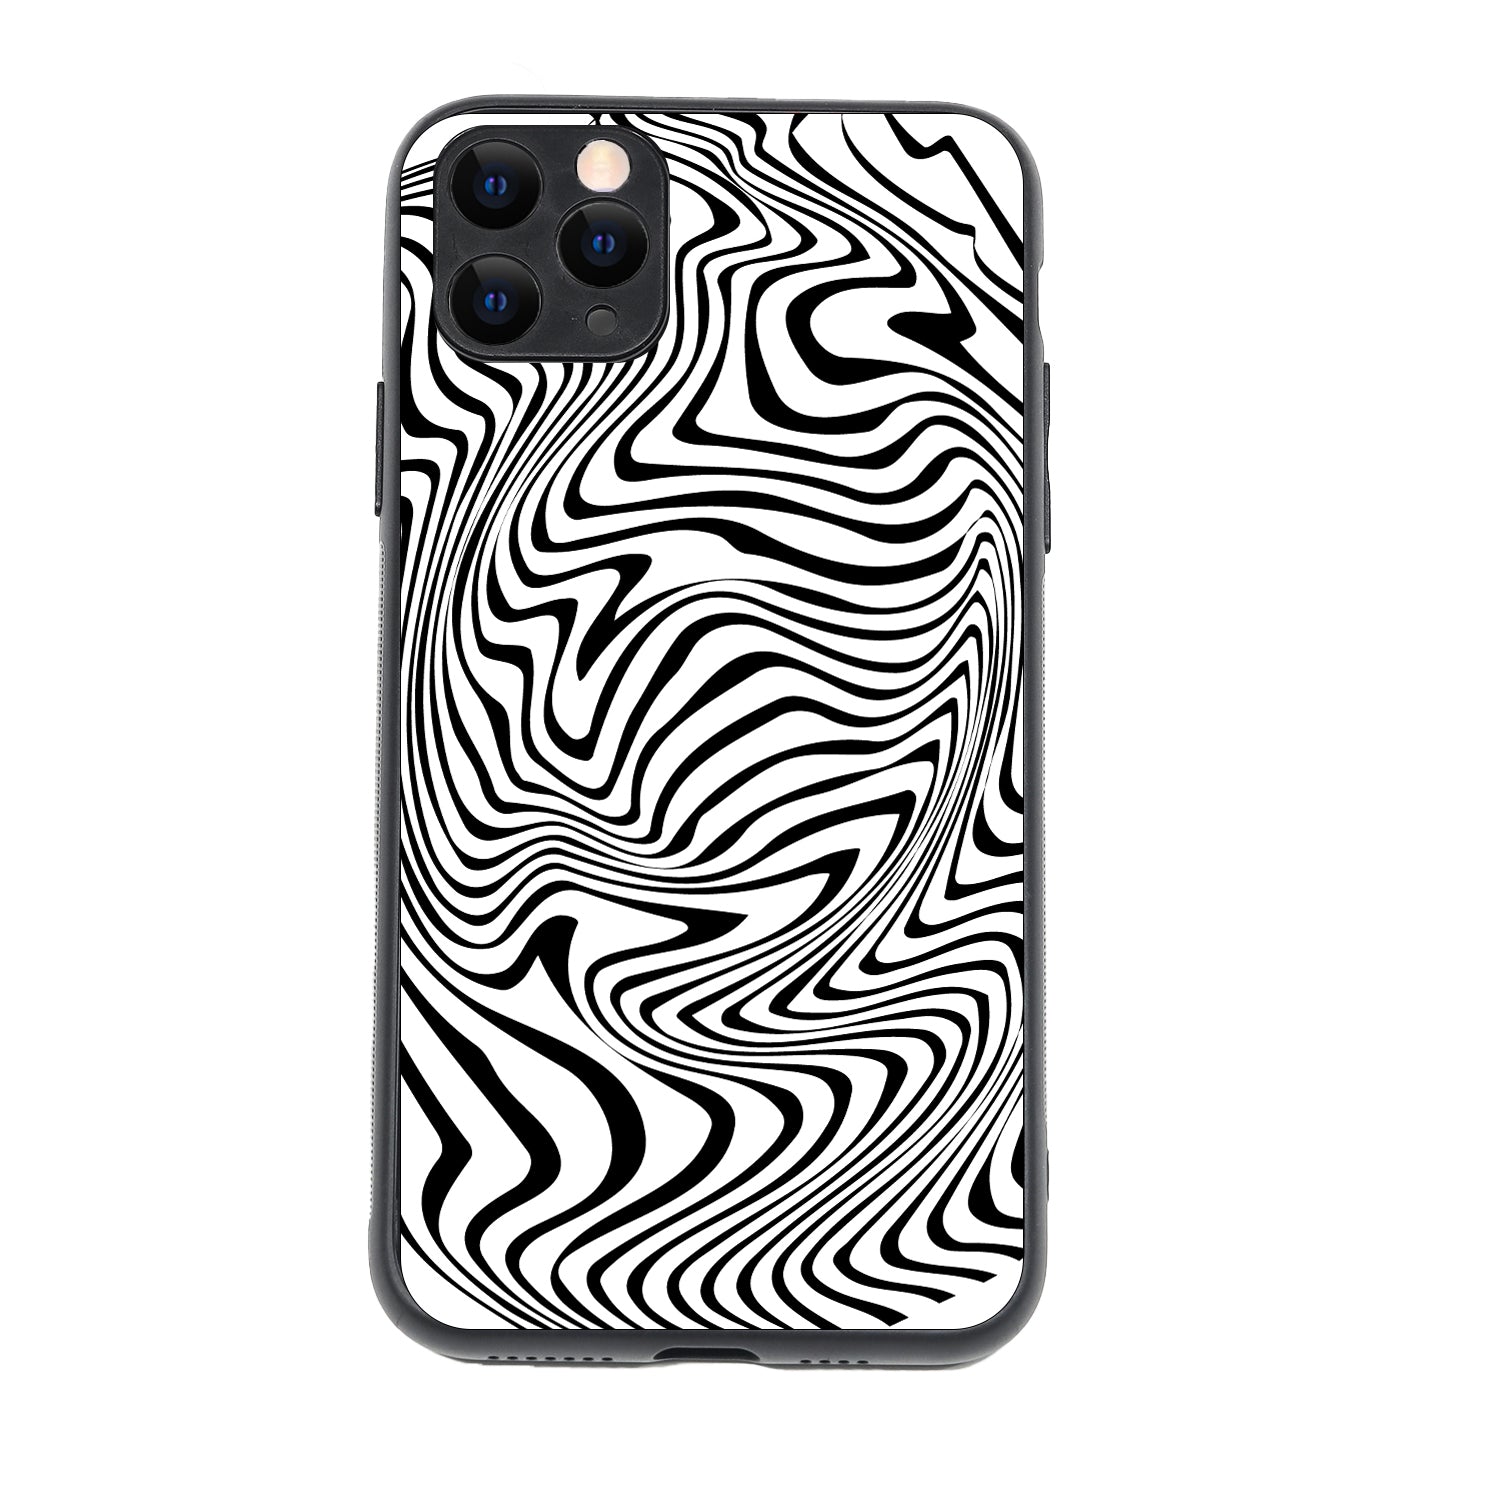 White Zig-Zag Optical Illusion iPhone 11 Pro Max Case